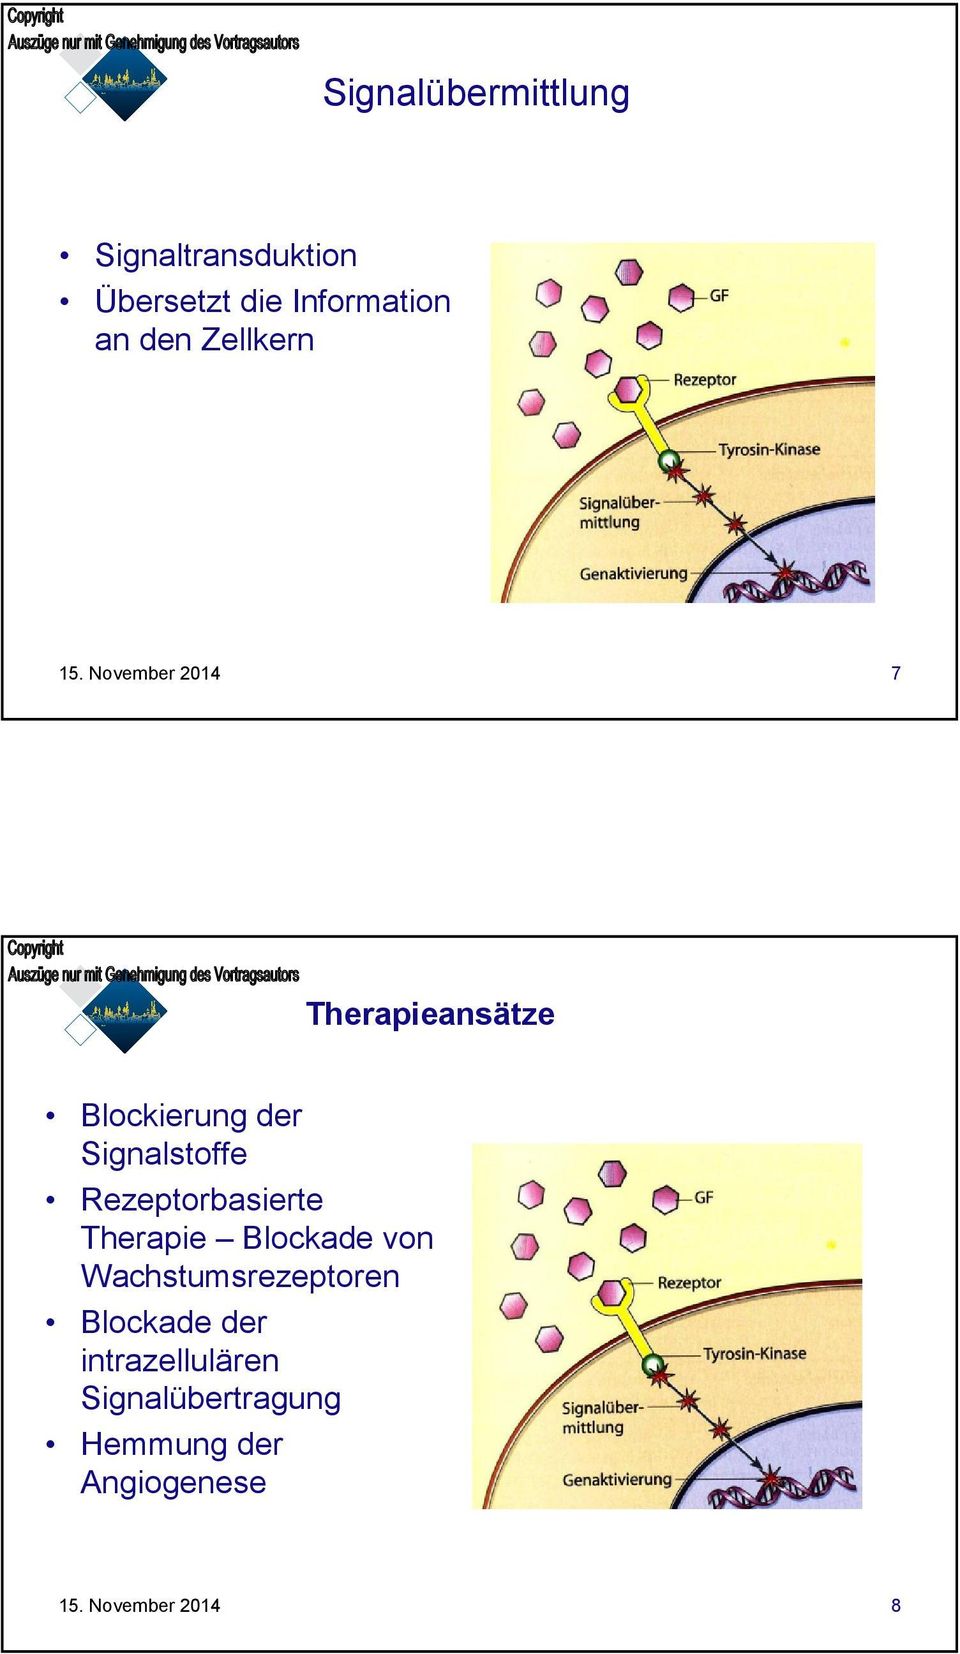 Rezeptorbasierte Therapie Blockade von Wachstumsrezeptoren